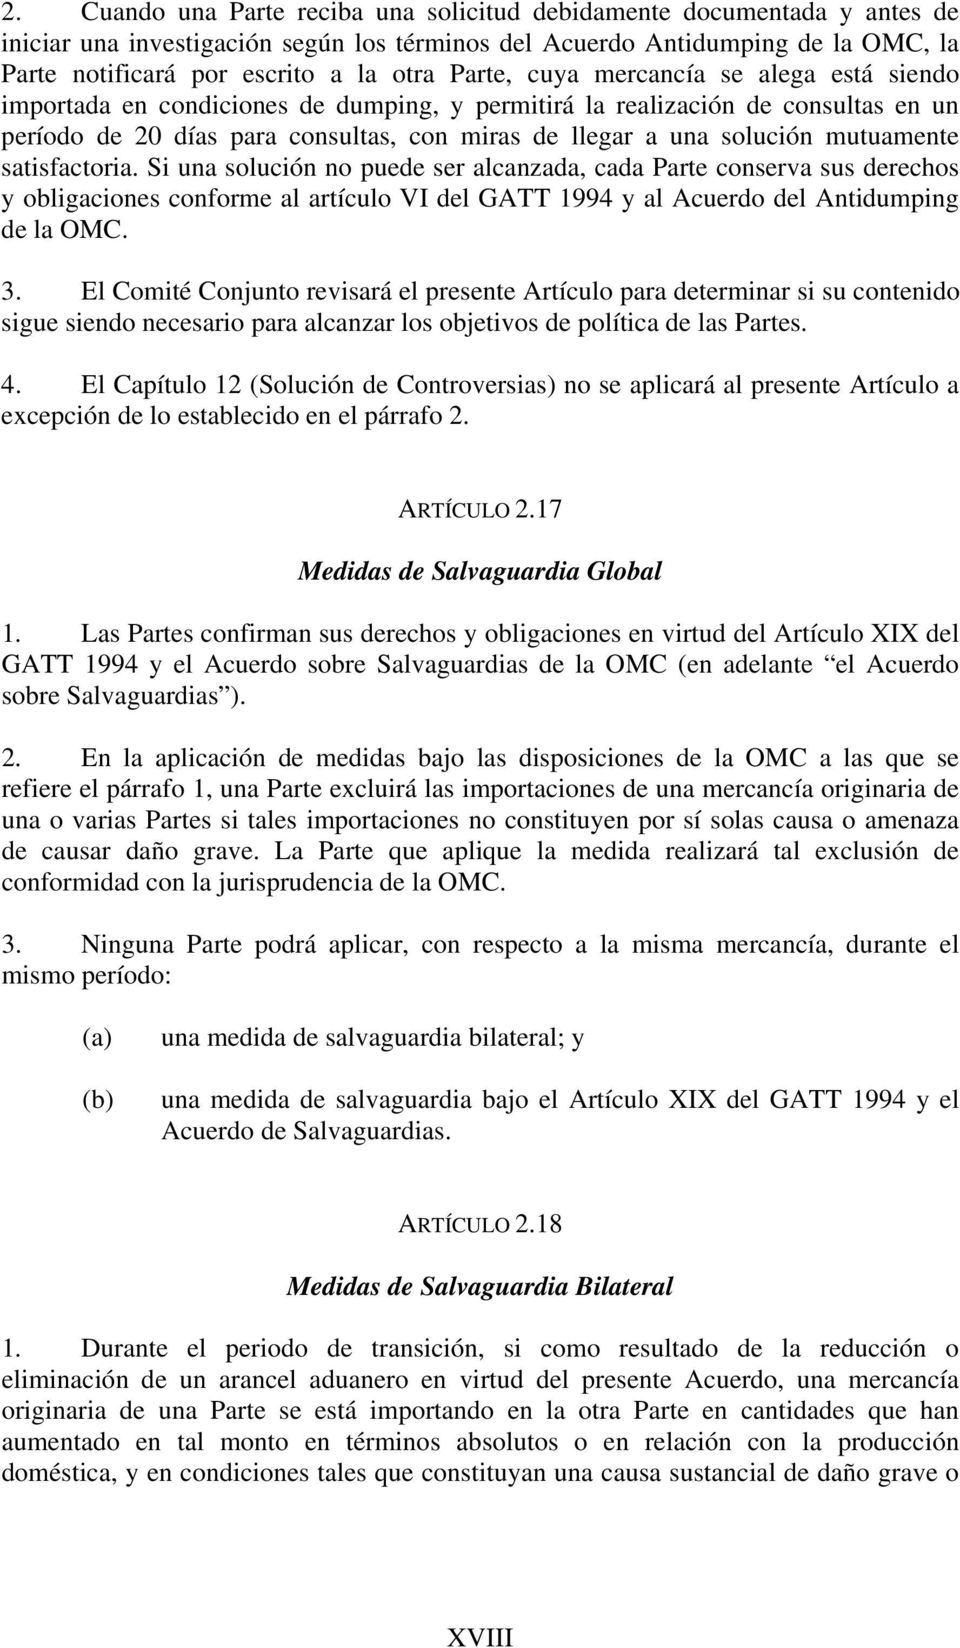 mutuamente satisfactoria. Si una solución no puede ser alcanzada, cada Parte conserva sus derechos y obligaciones conforme al artículo VI del GATT 1994 y al Acuerdo del Antidumping de la OMC. 3.